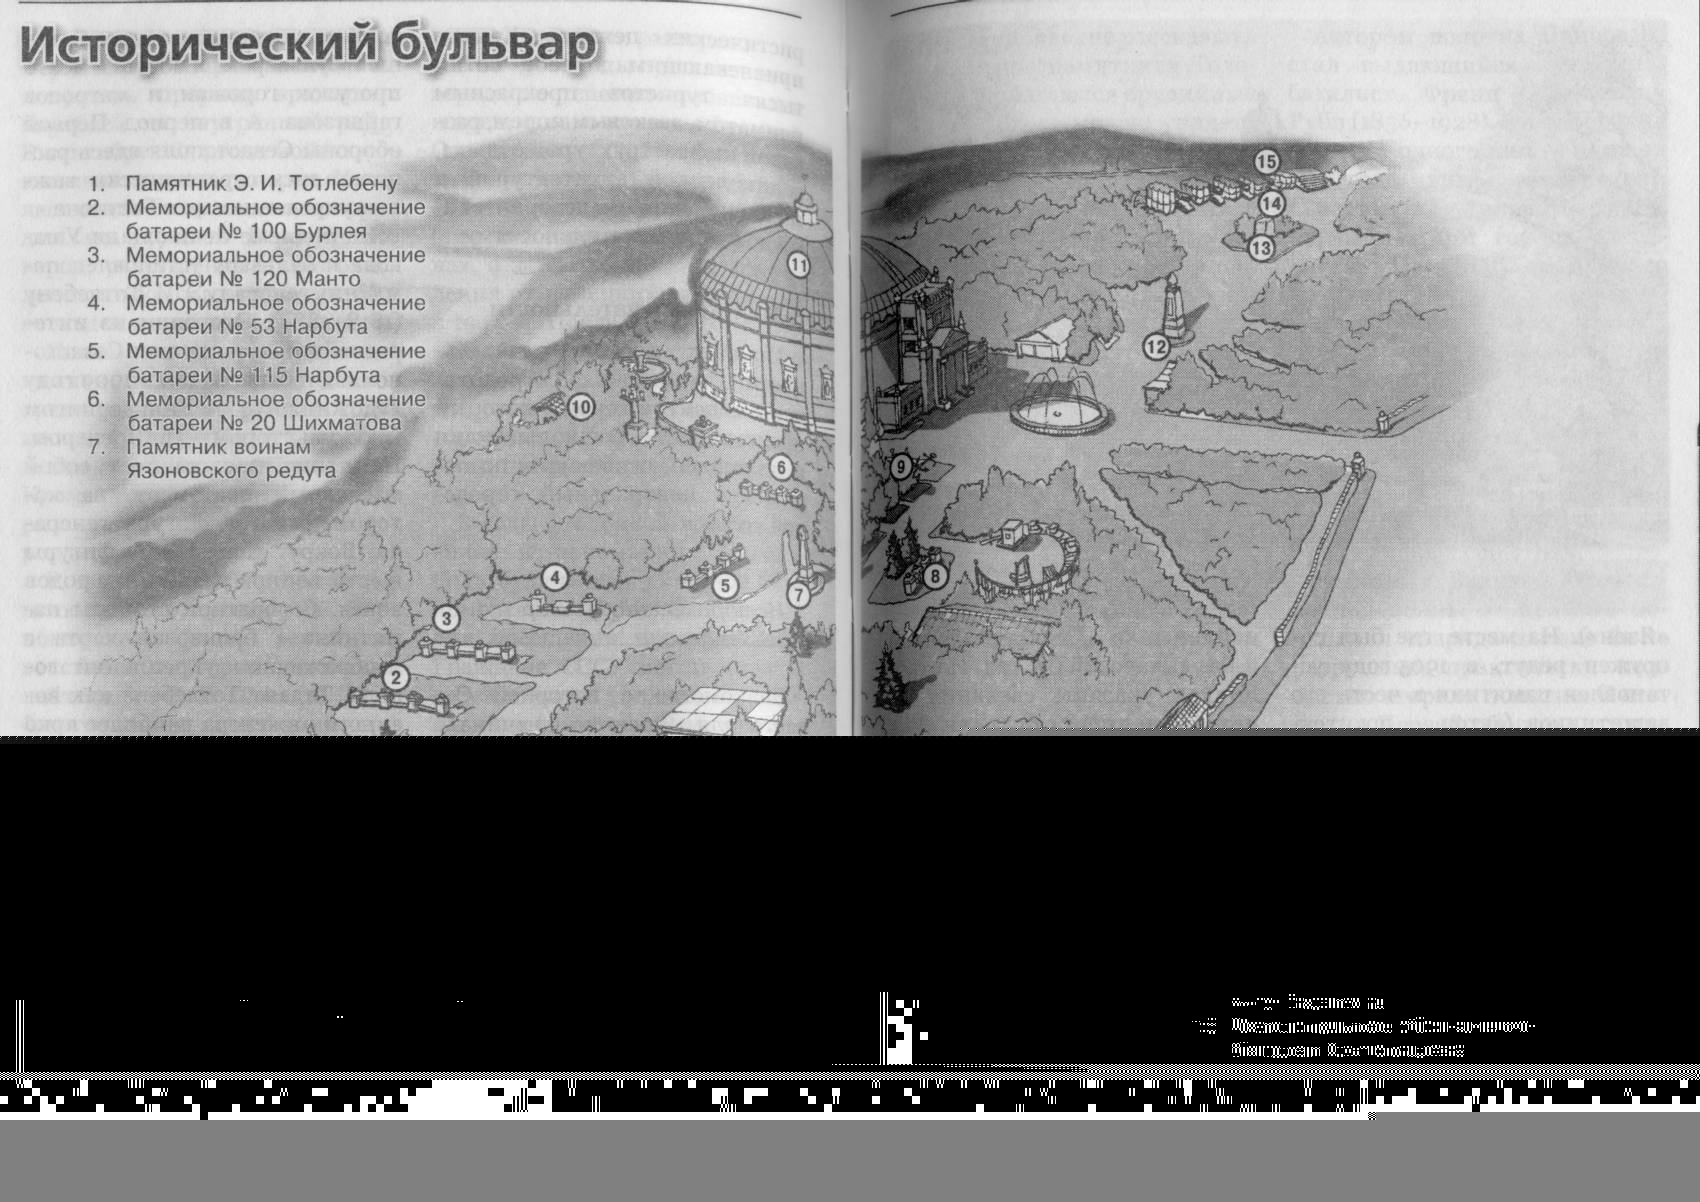 Севастополь - карта-план Исторического бульвара